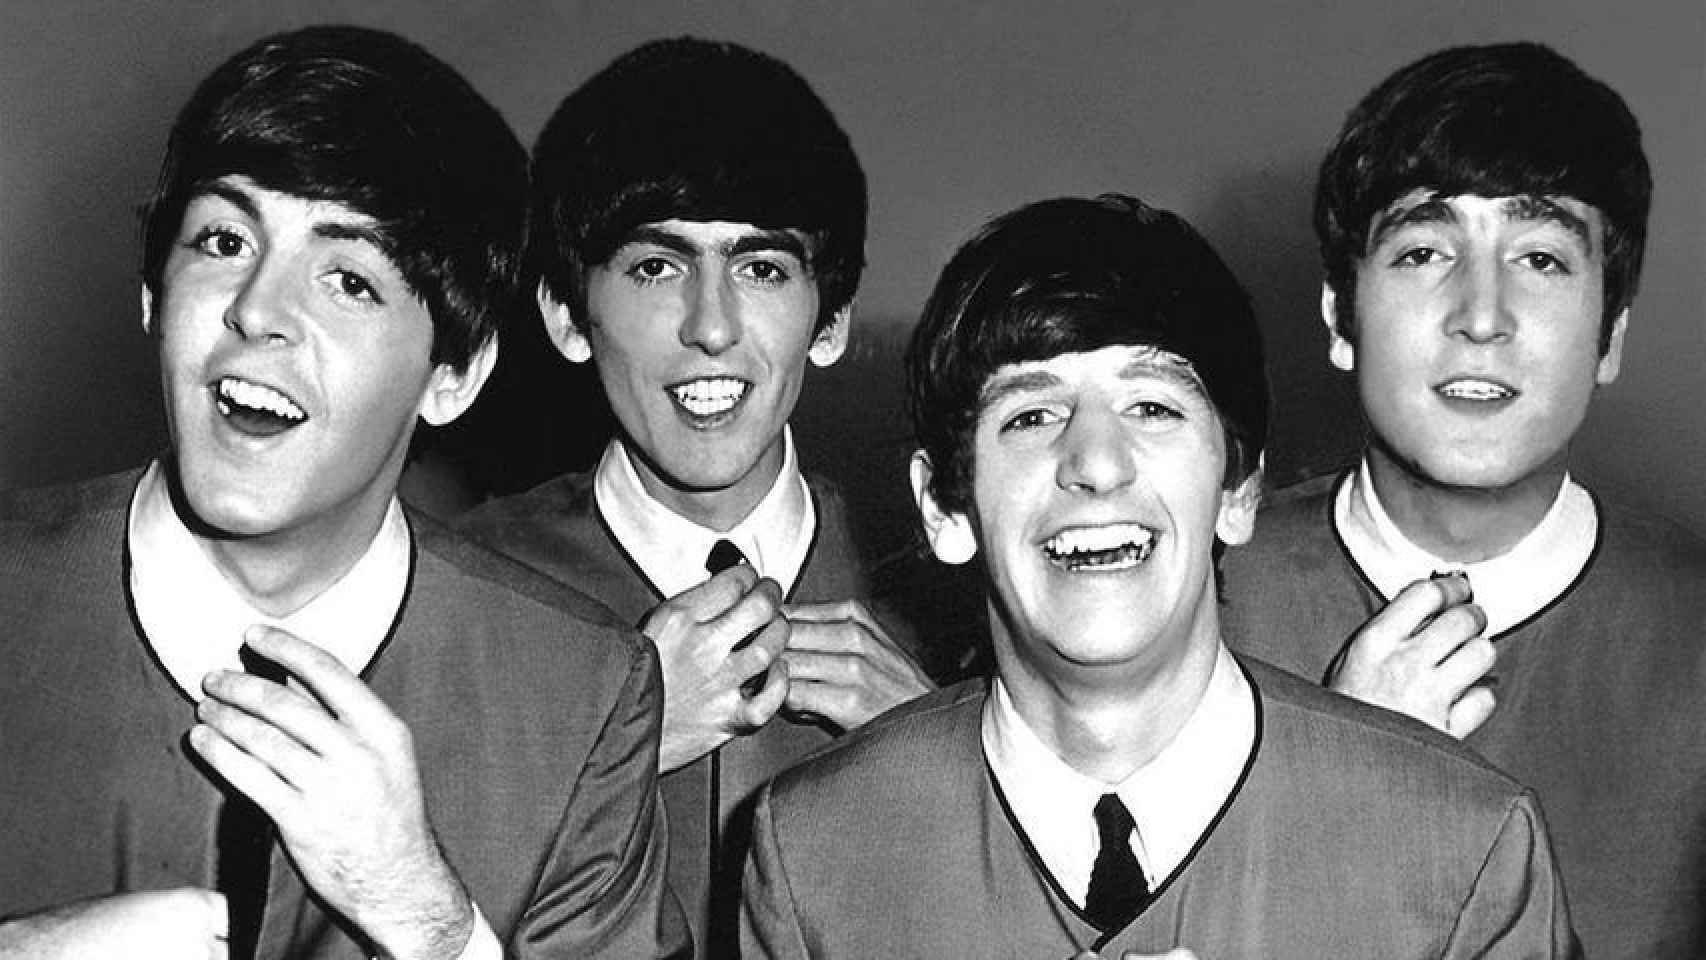 Imagen de los cuatro integrantes de The Beatles con los peinados característicos de sus primeros años.